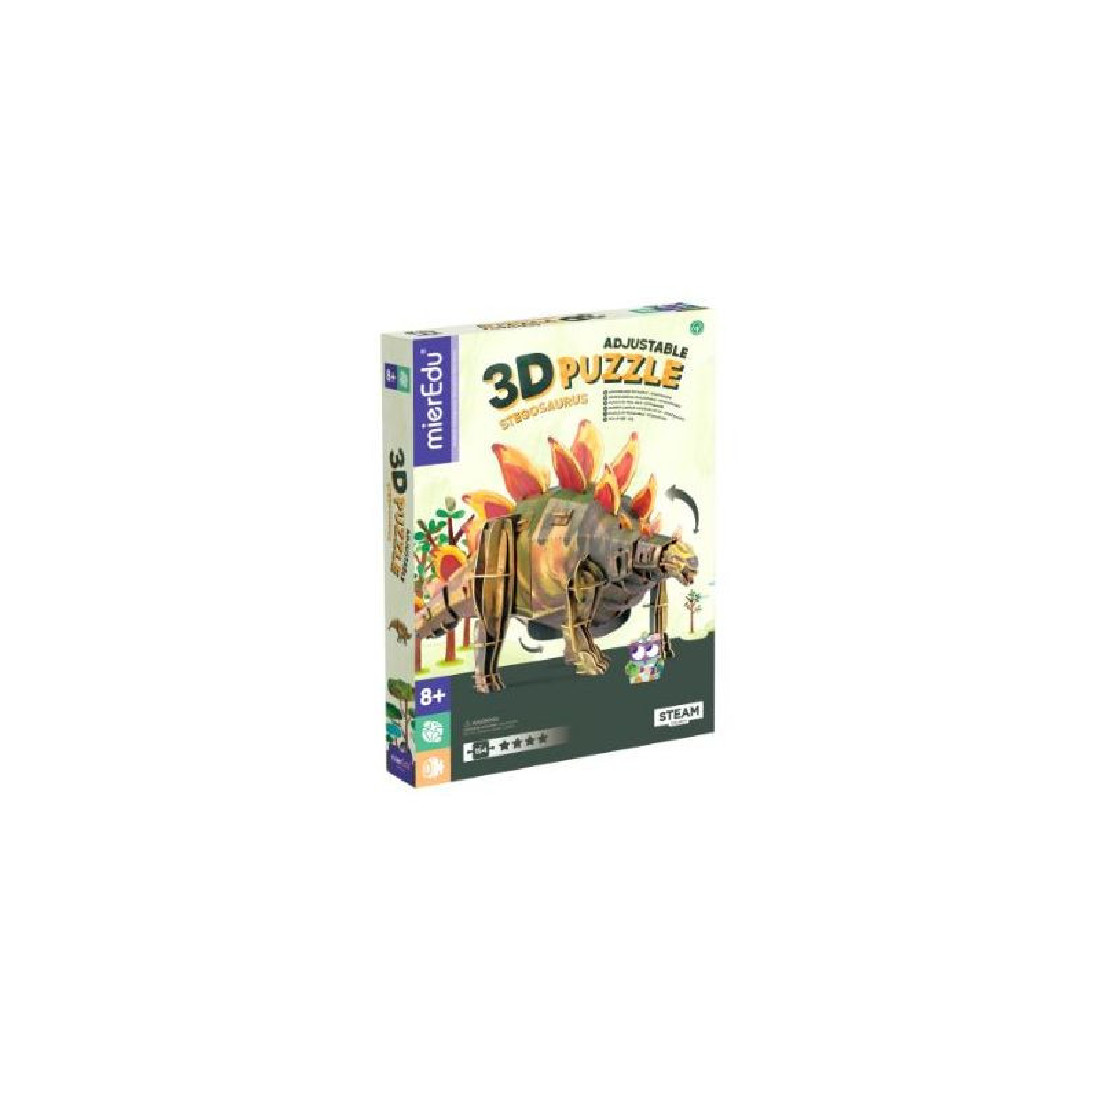 3D Puzzle Stegosaurus 00160 Mier Edu